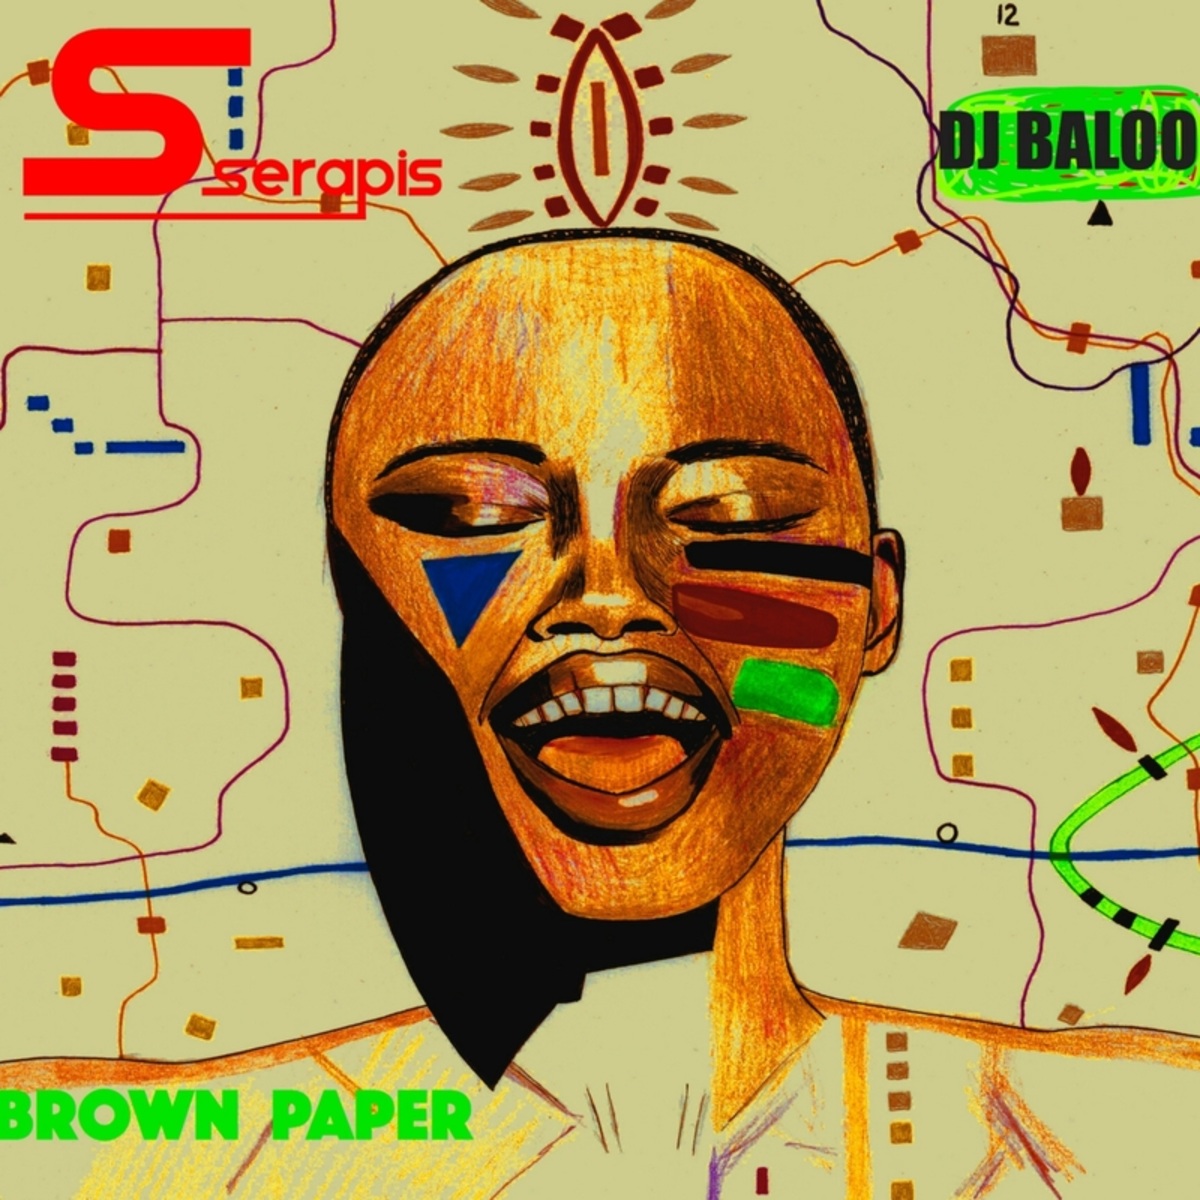 Dj Baloo - Brown Paper / Serapis